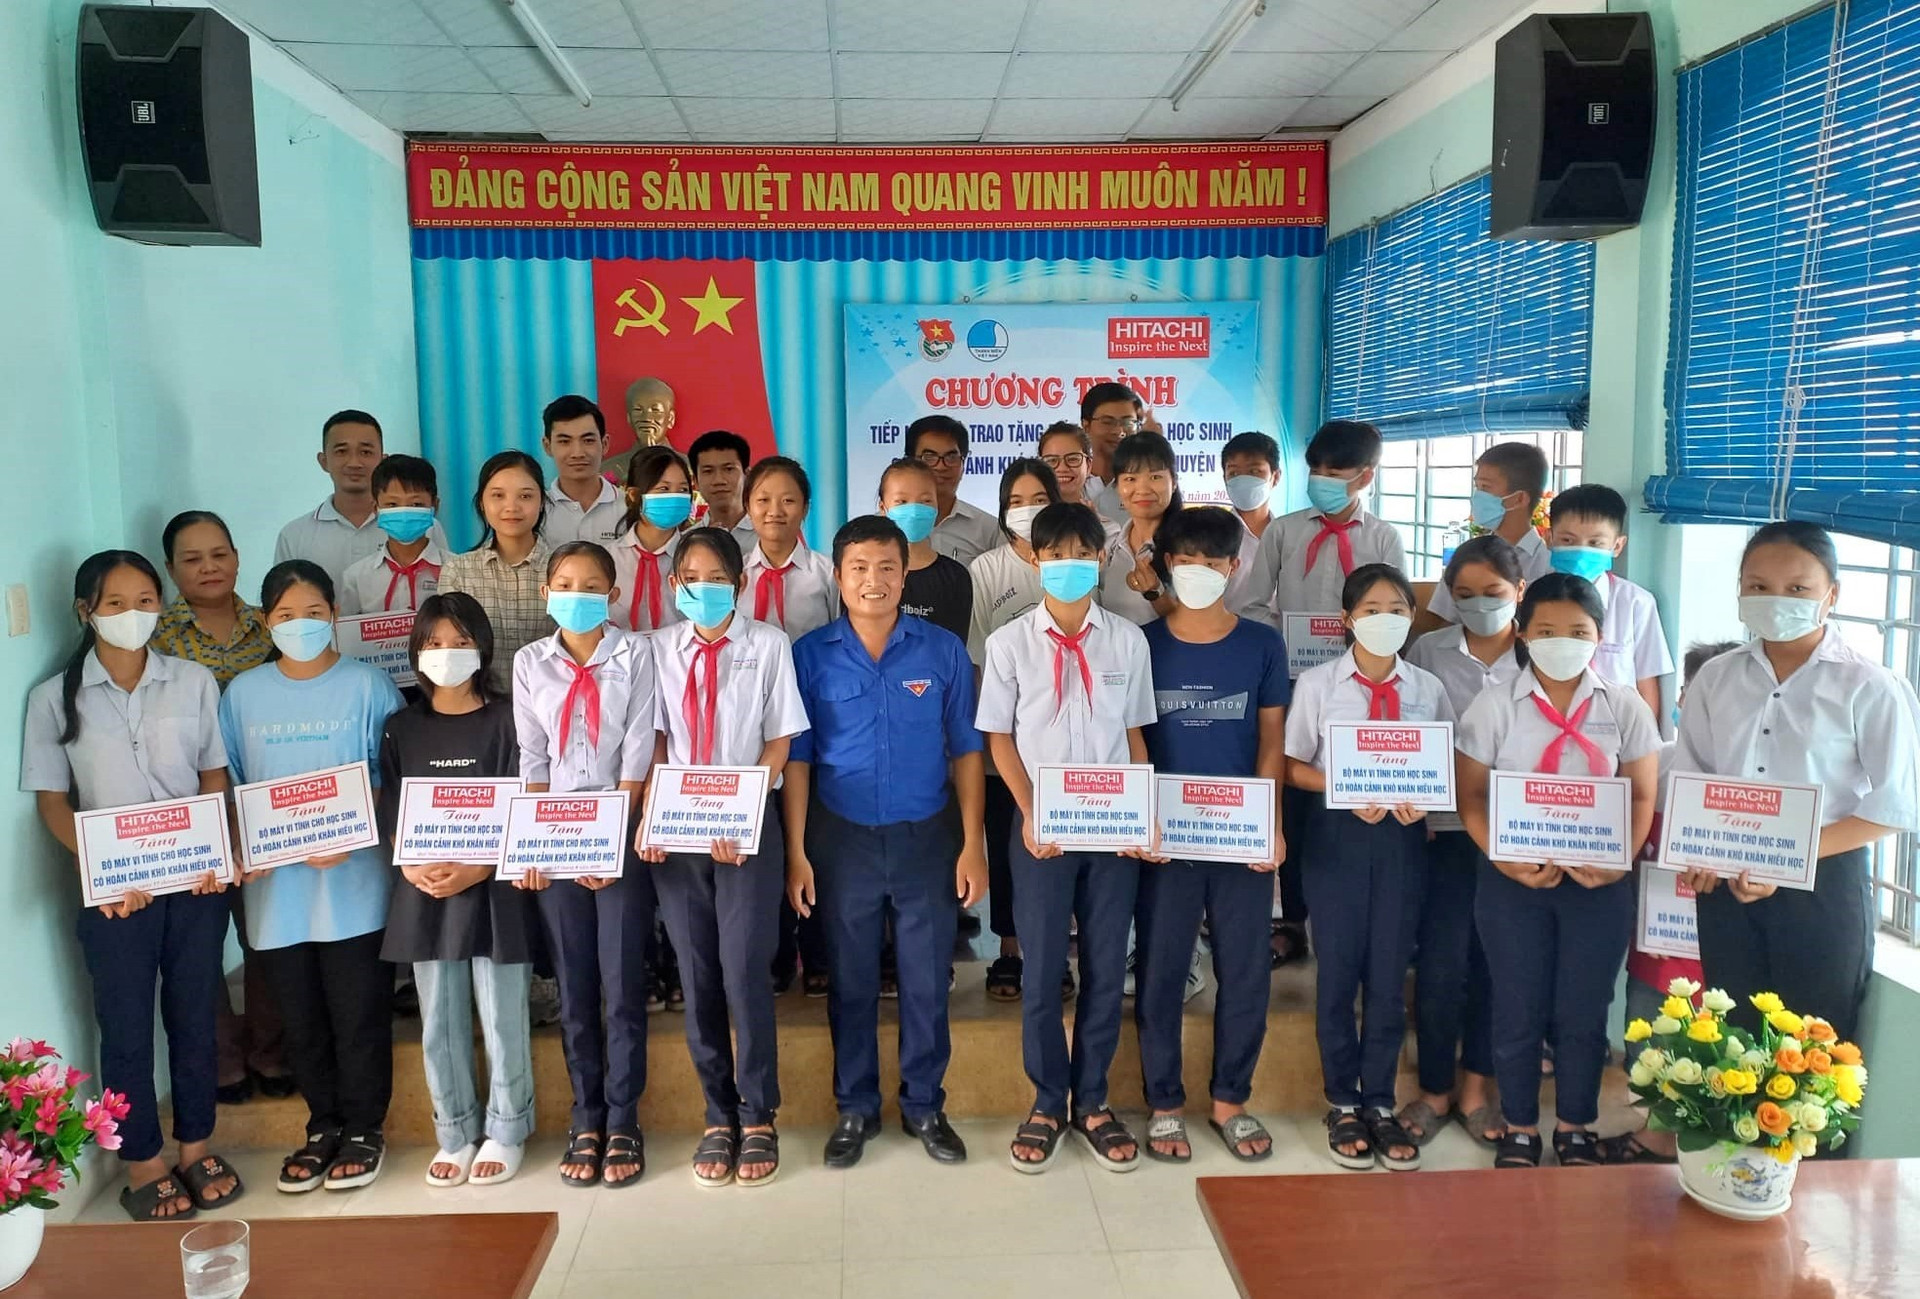 Chương trình trao tặng máy vi tính cho 23 học sinh có hoàn cảnh khó khăn của huyện Quế Sơn. ảnh DT